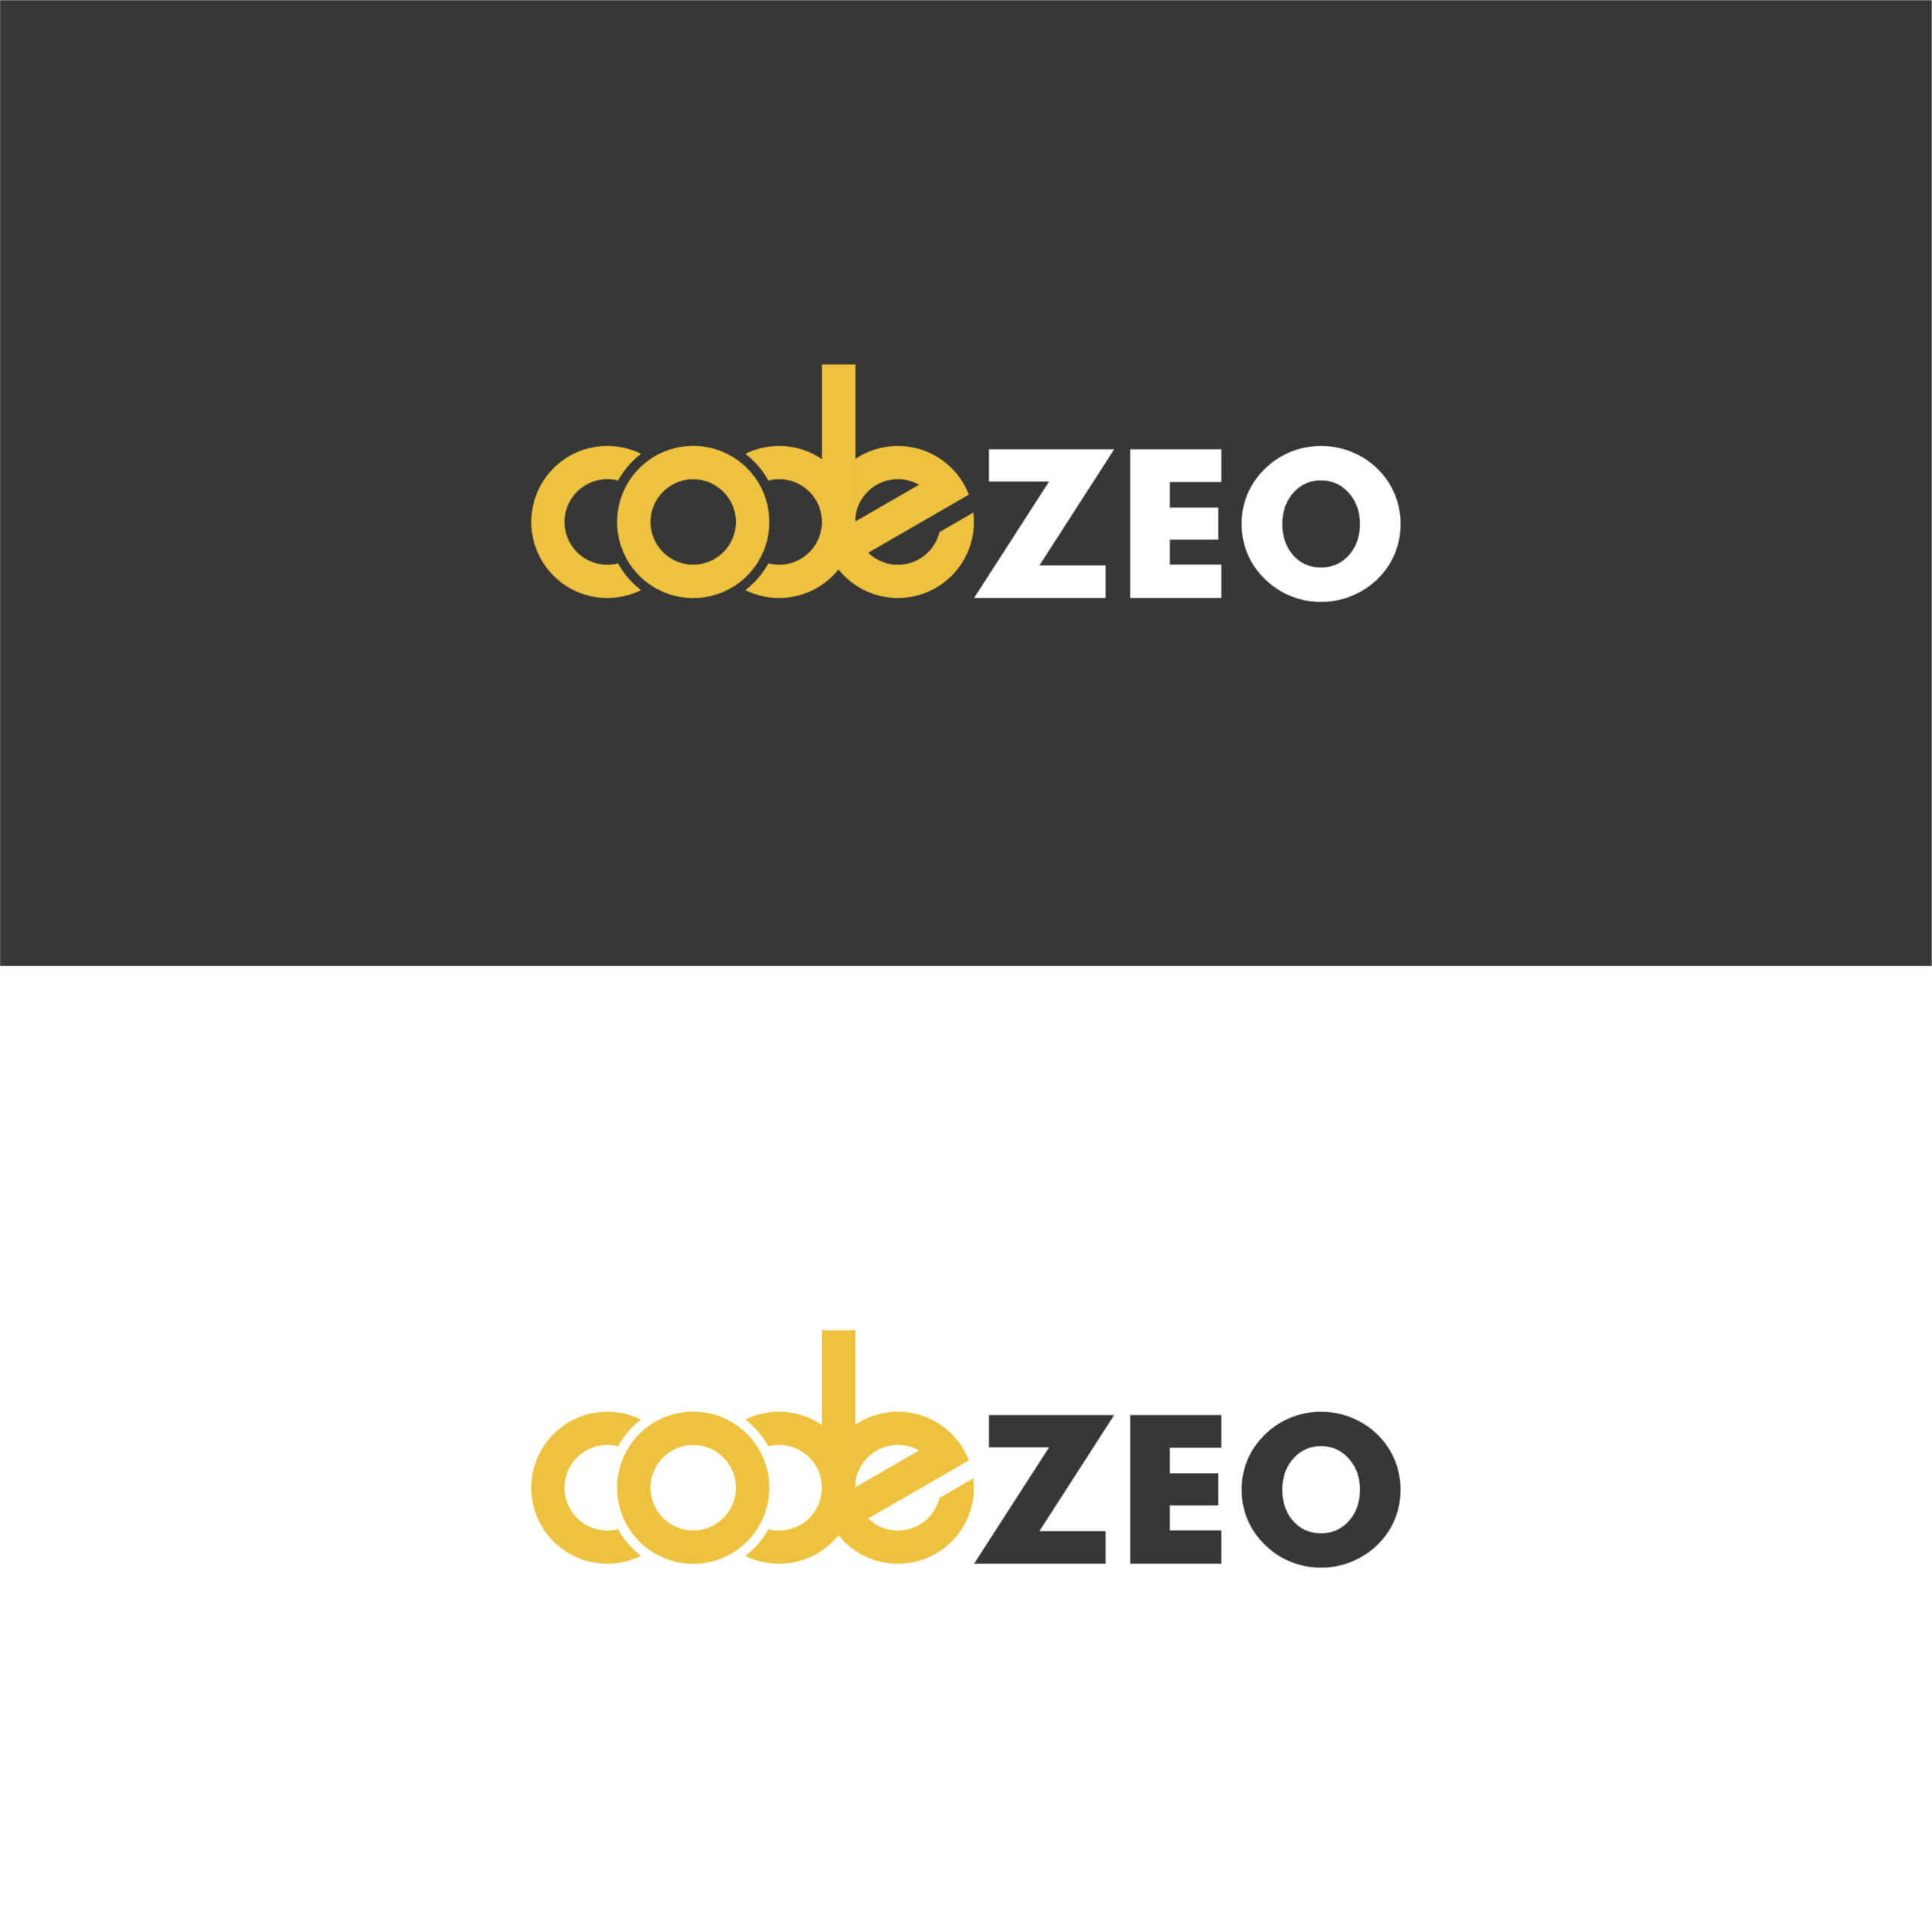 CodeZeo (5)